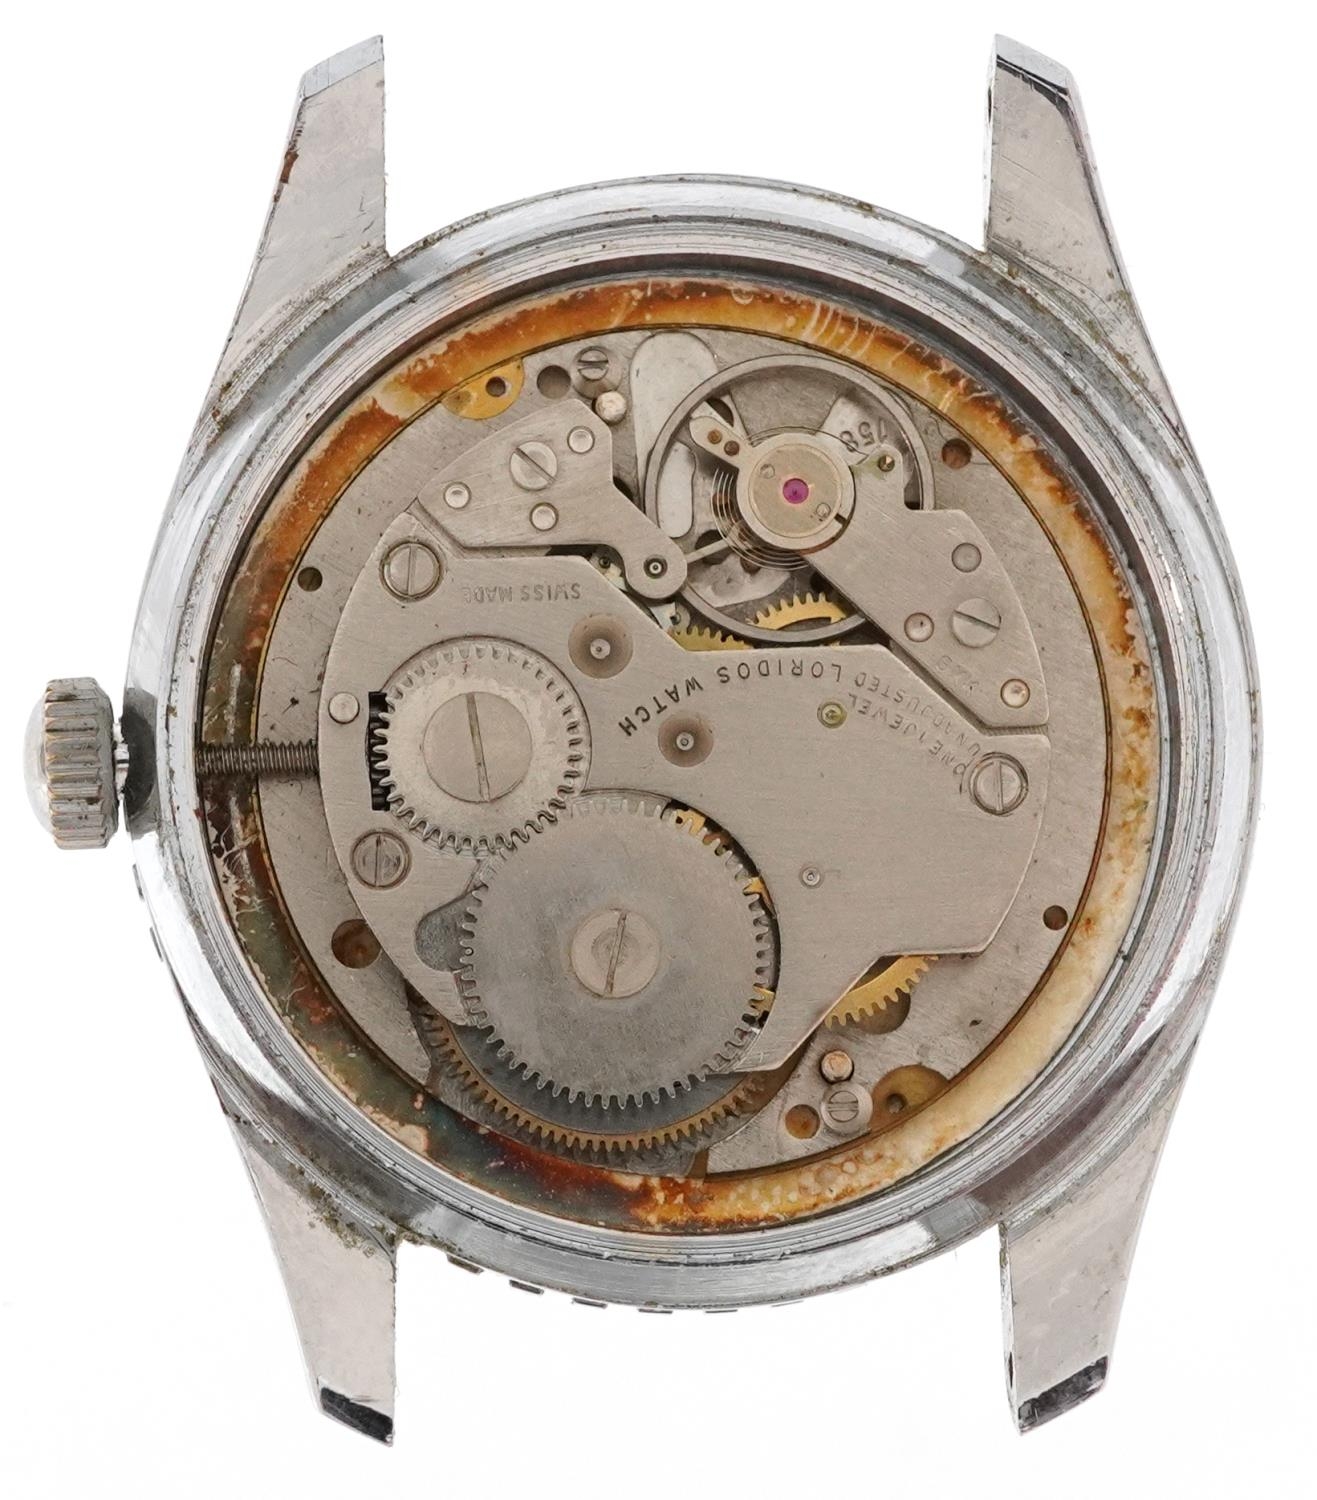 OHN, gentlemen's OHN Airman manual wristwatch having silvered dial, 36mm in diameter - Image 3 of 4